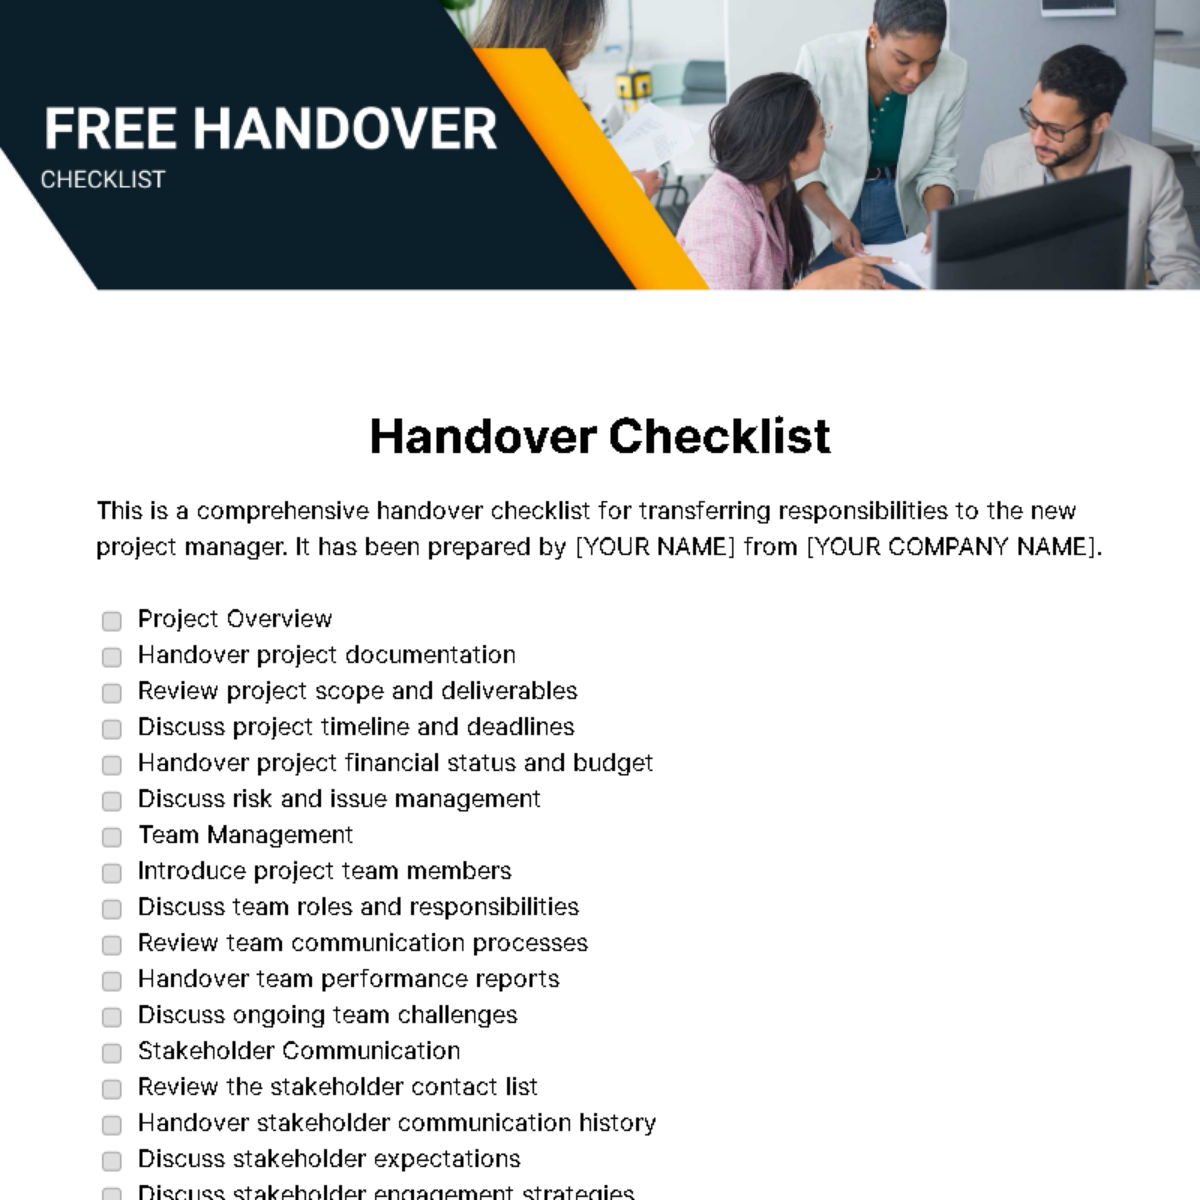 Handover Checklist Template